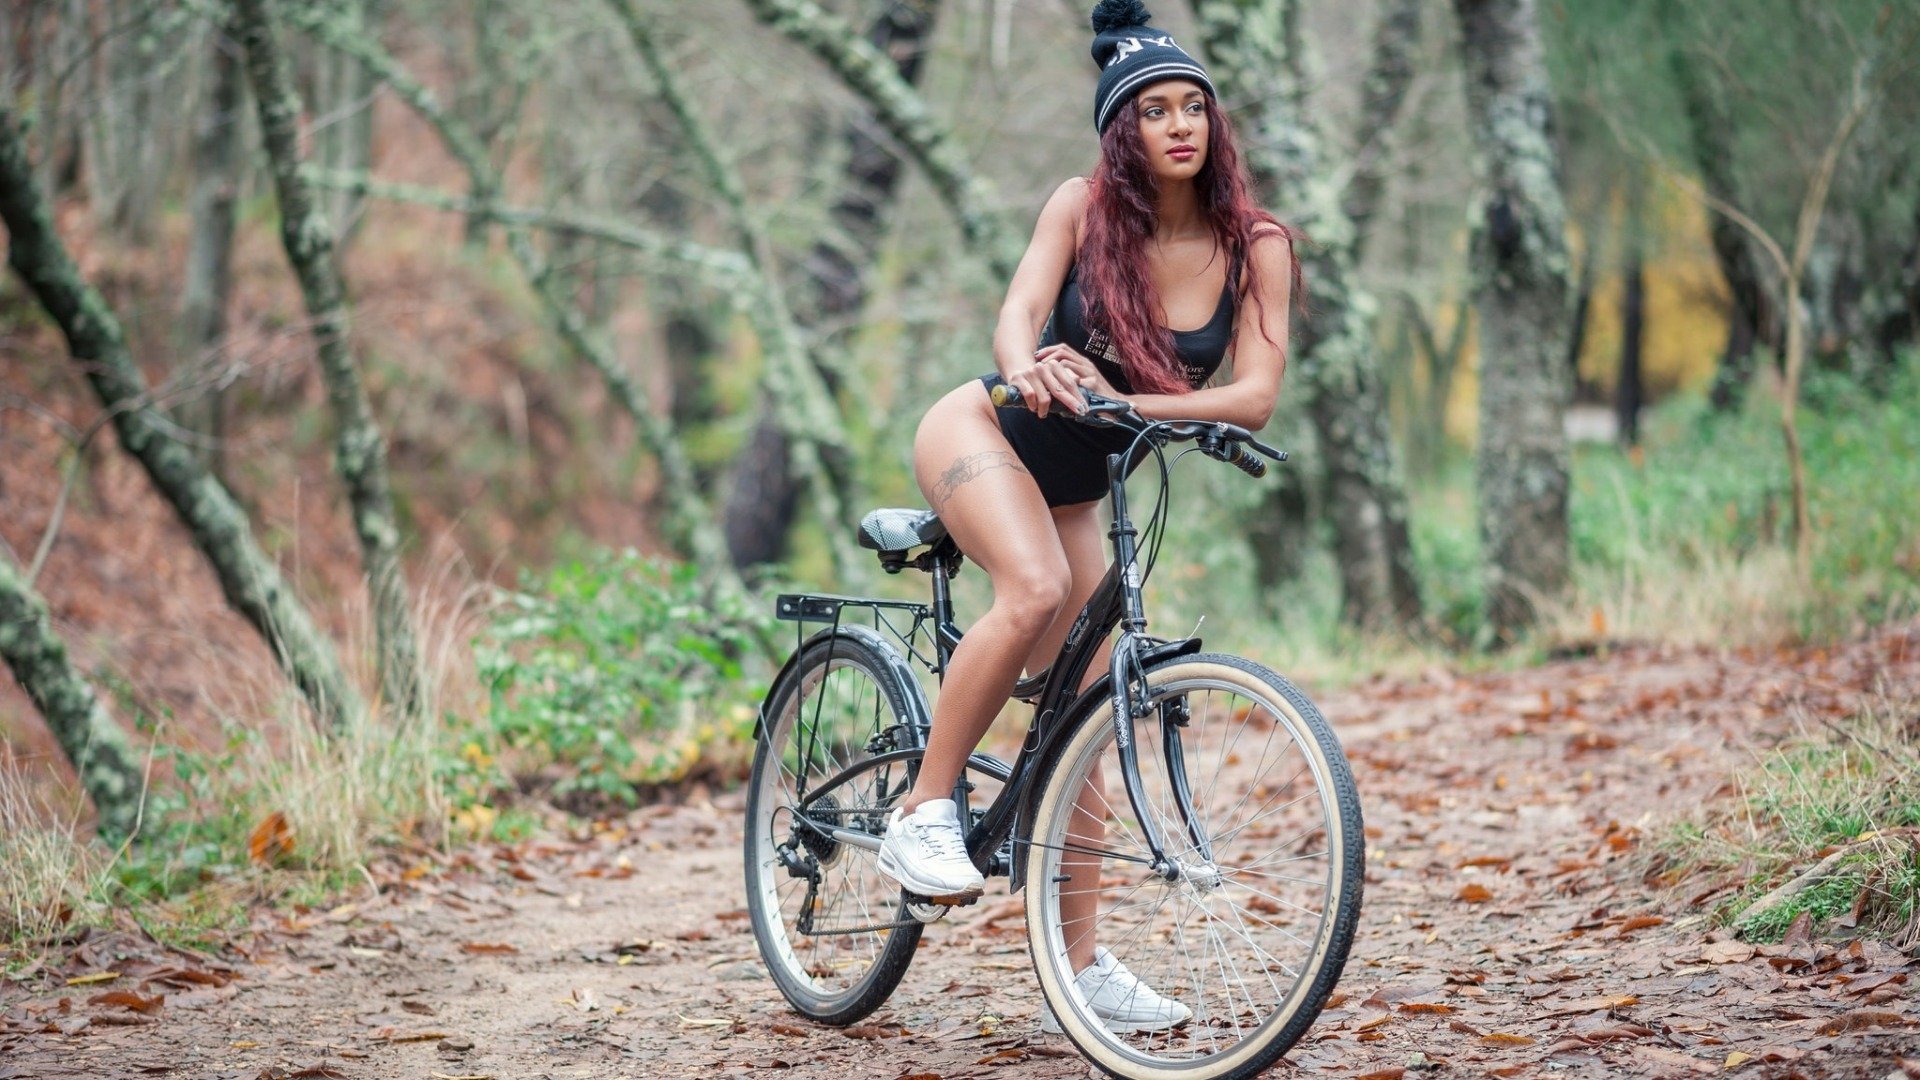 Раздетая девушка с велосипедом на фото